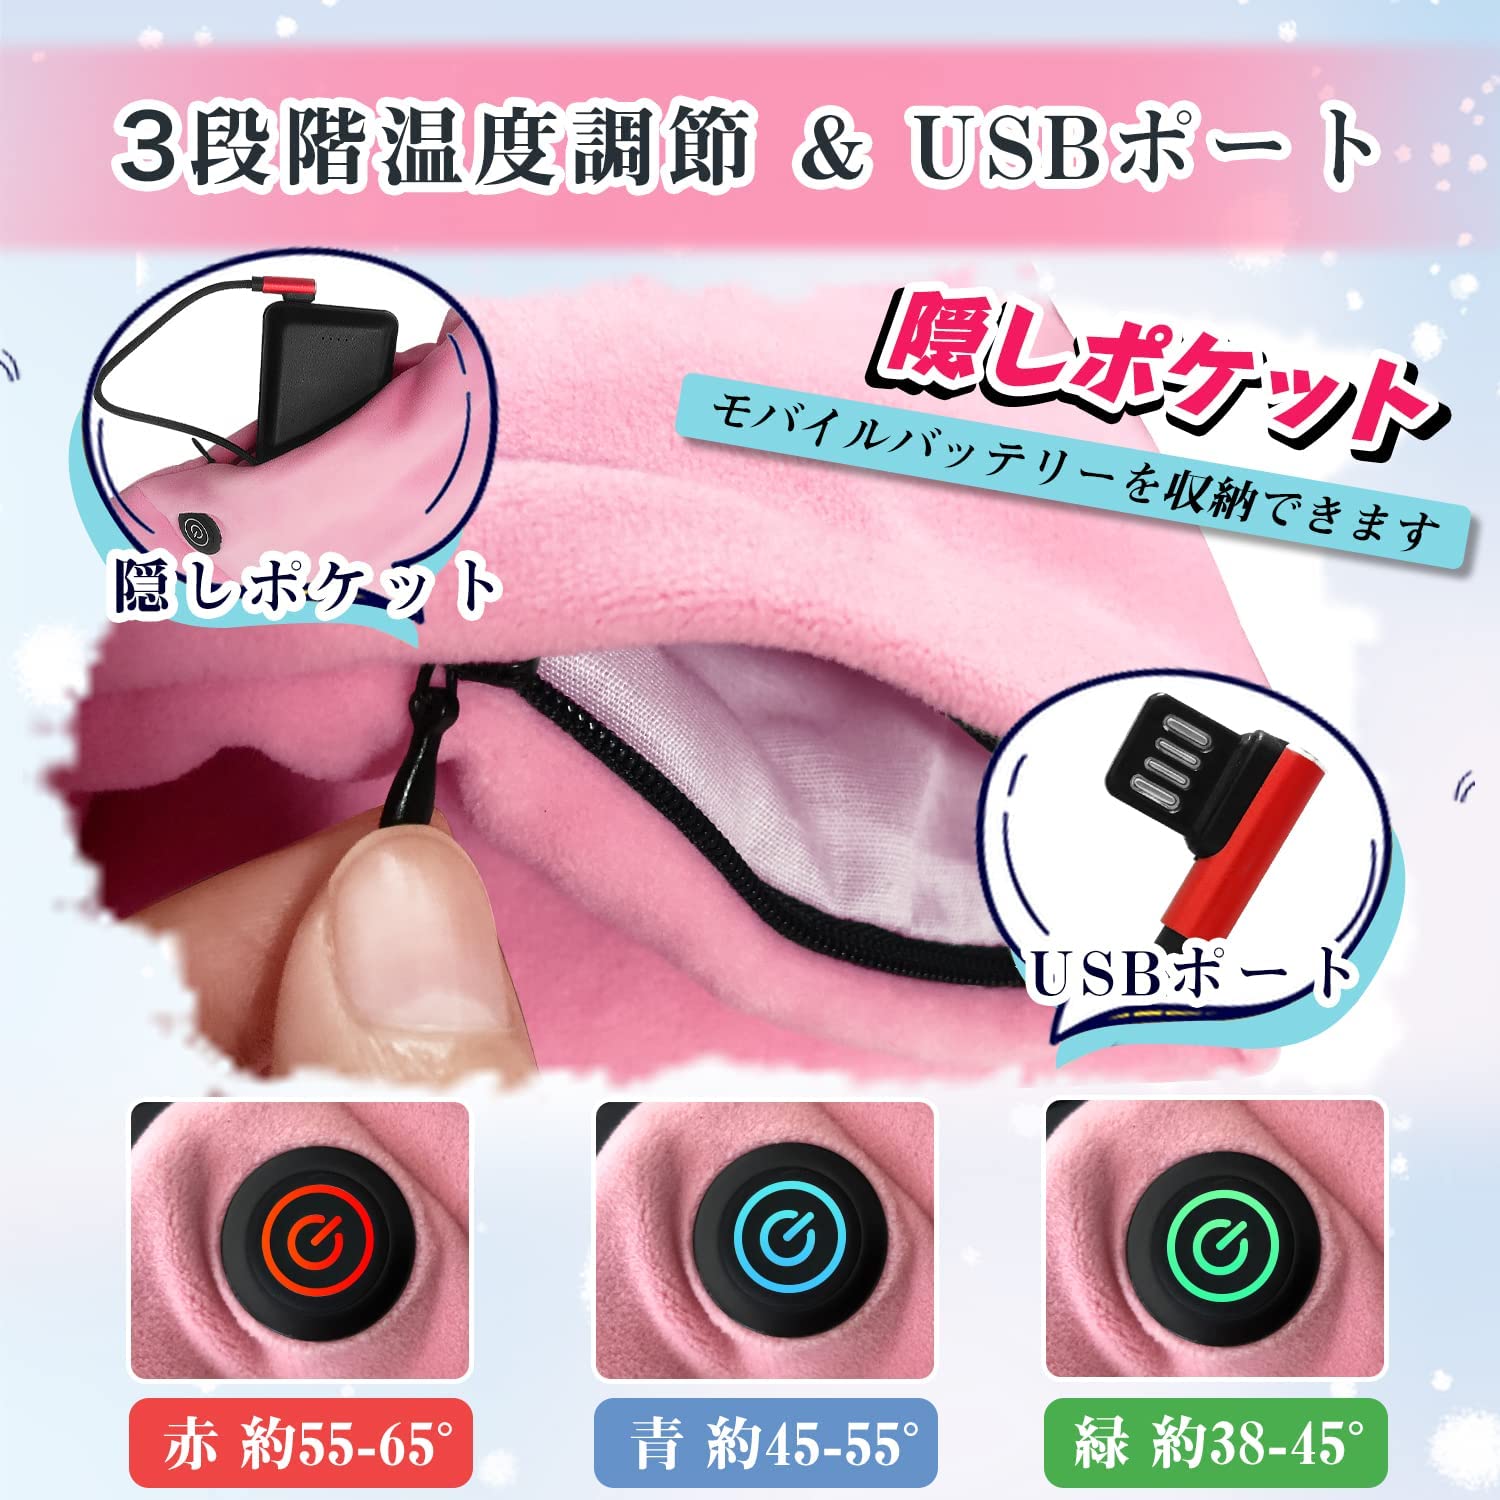 199円 最適な材料 mini湯たんぽ☆携帯size